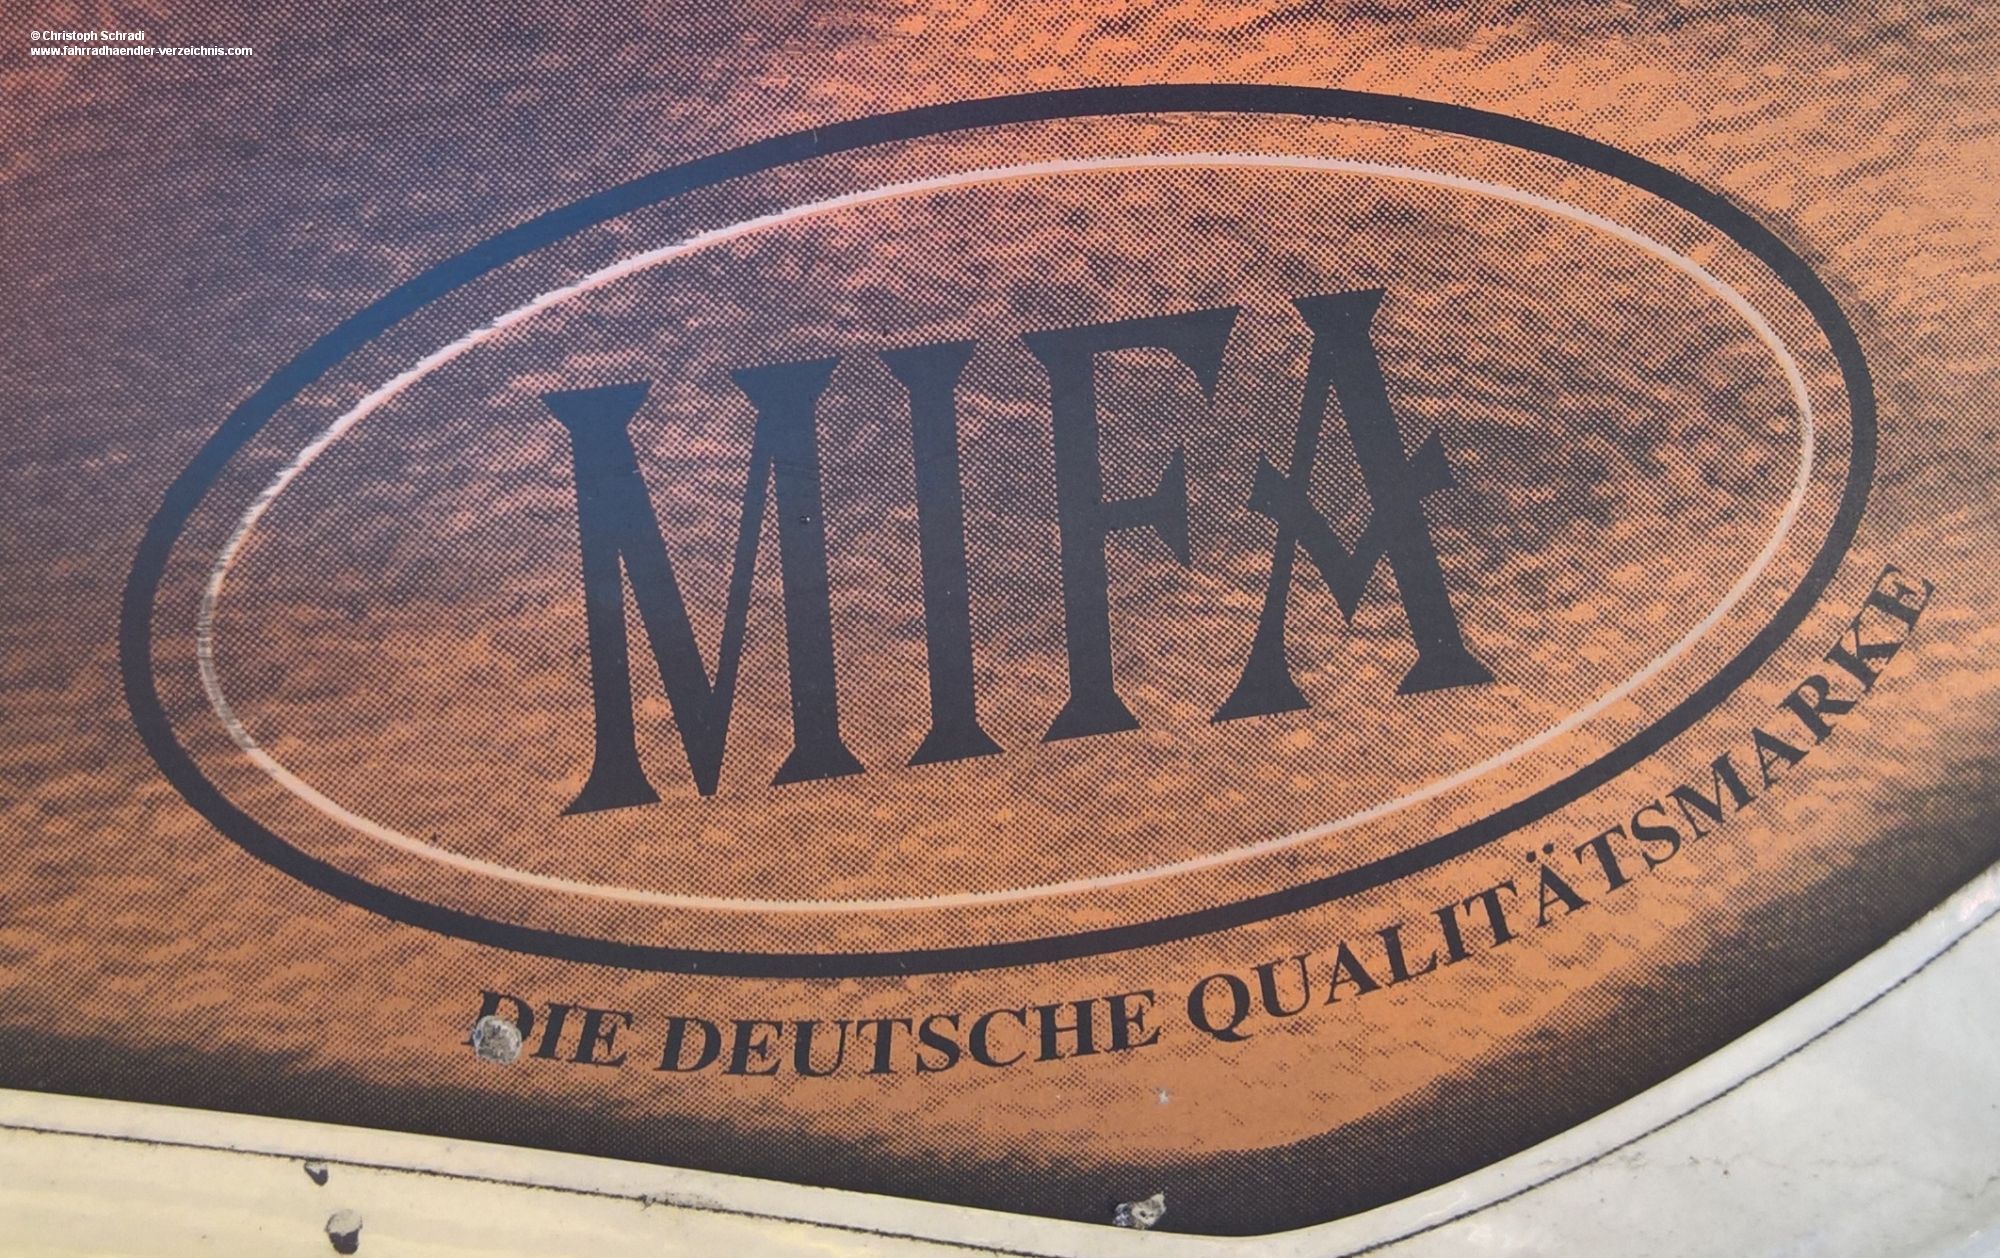 Fahrradhersteller Mifa muss im Zuge der Insolvenz wohl Hälfte der Mitarbeiter entlassen